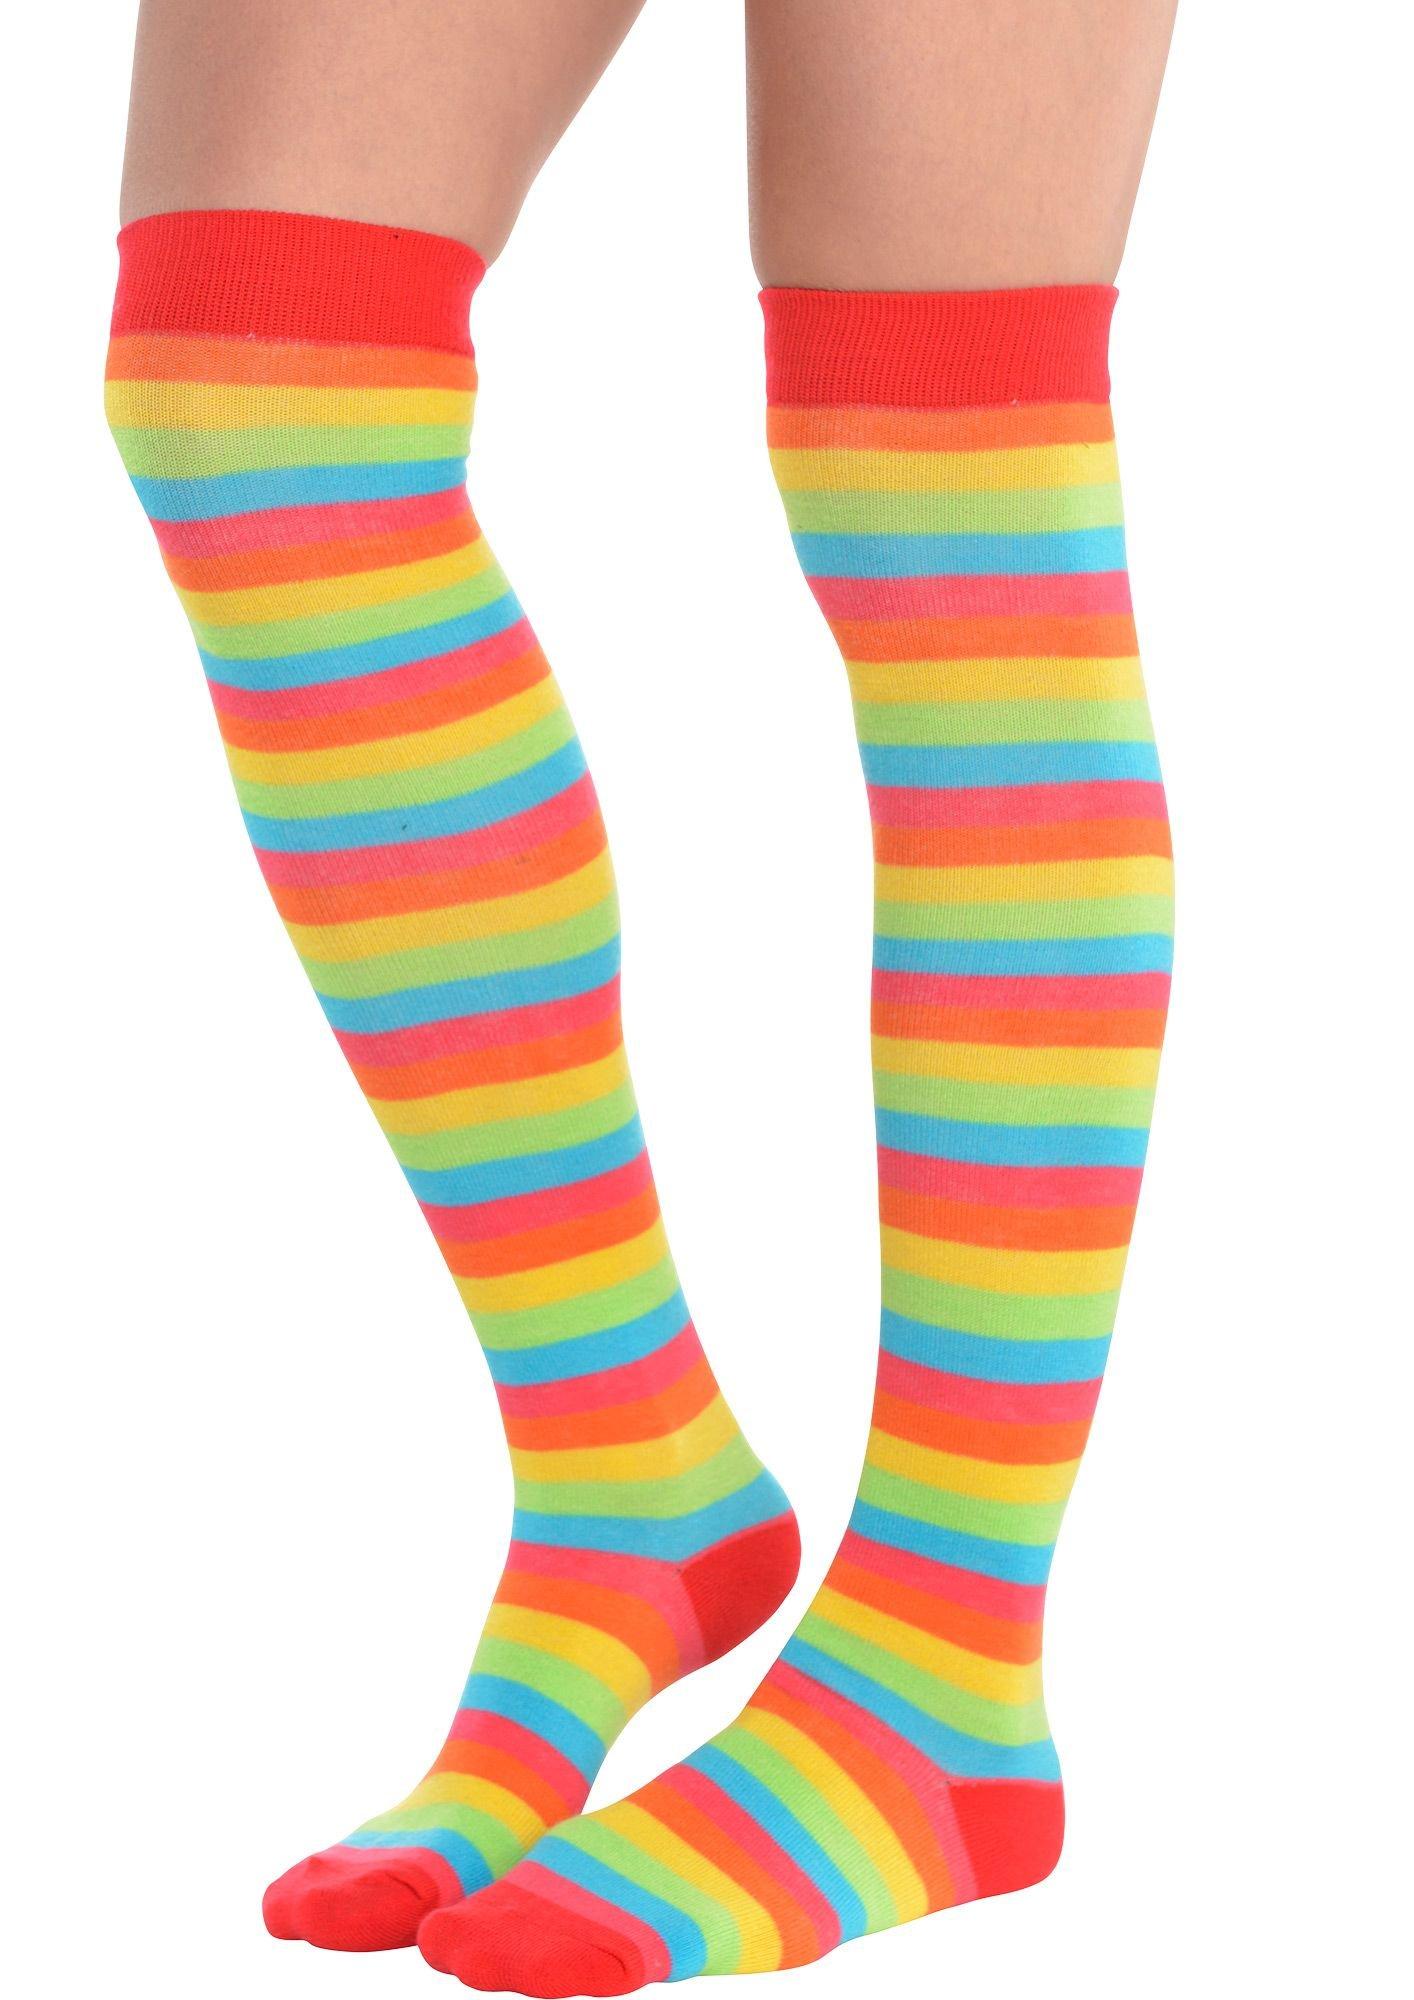 Under The Knee Rainbow Striped Socks